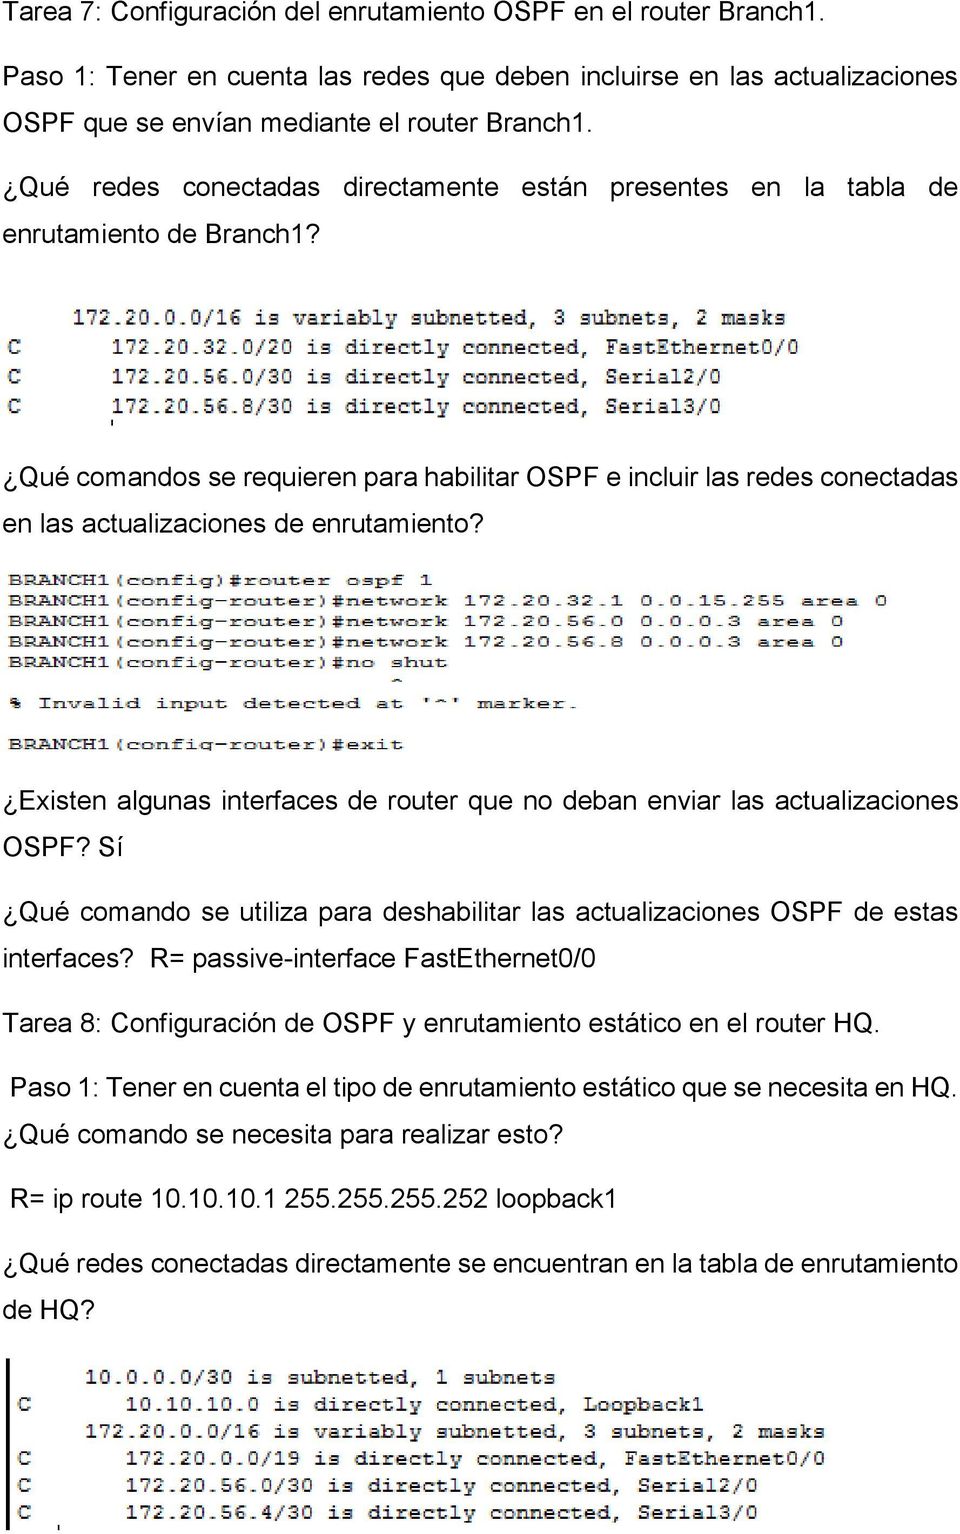 Qué comandos se requieren para habilitar OSPF e incluir las redes conectadas en las actualizaciones de enrutamiento? Existen algunas interfaces de router que no deban enviar las actualizaciones OSPF?